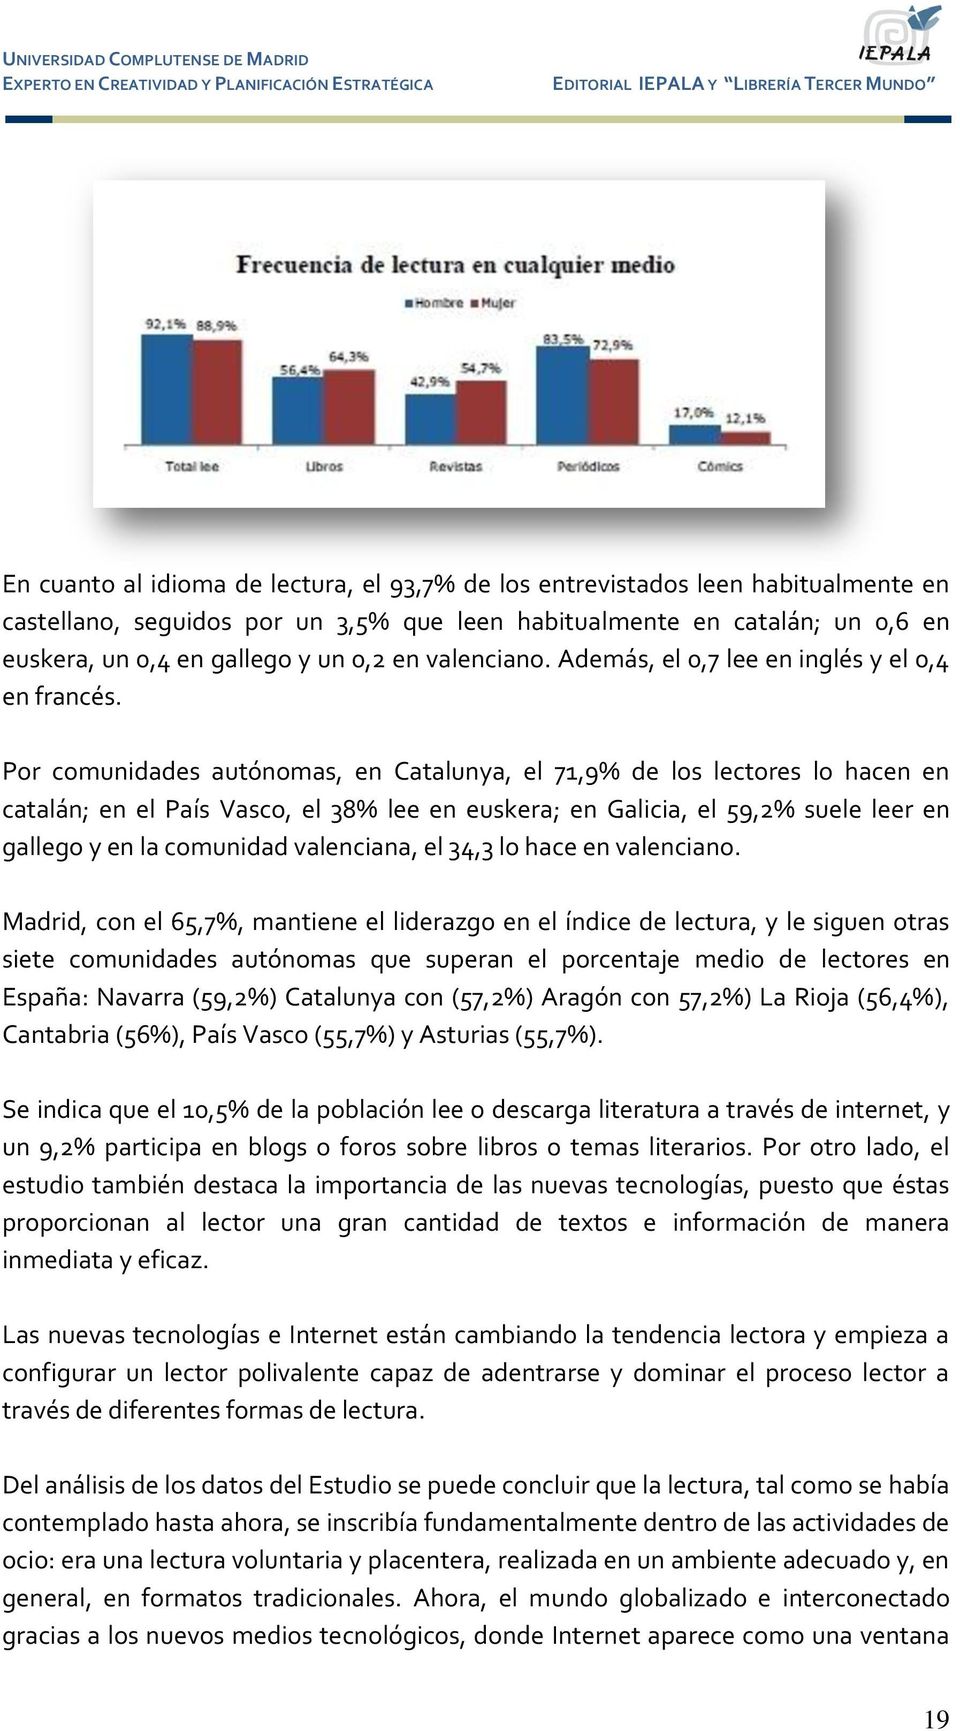 Por comunidades autónomas, en Catalunya, el 71,9% de los lectores lo hacen en catalán; en el País Vasco, el 38% lee en euskera; en Galicia, el 59,2% suele leer en gallego y en la comunidad